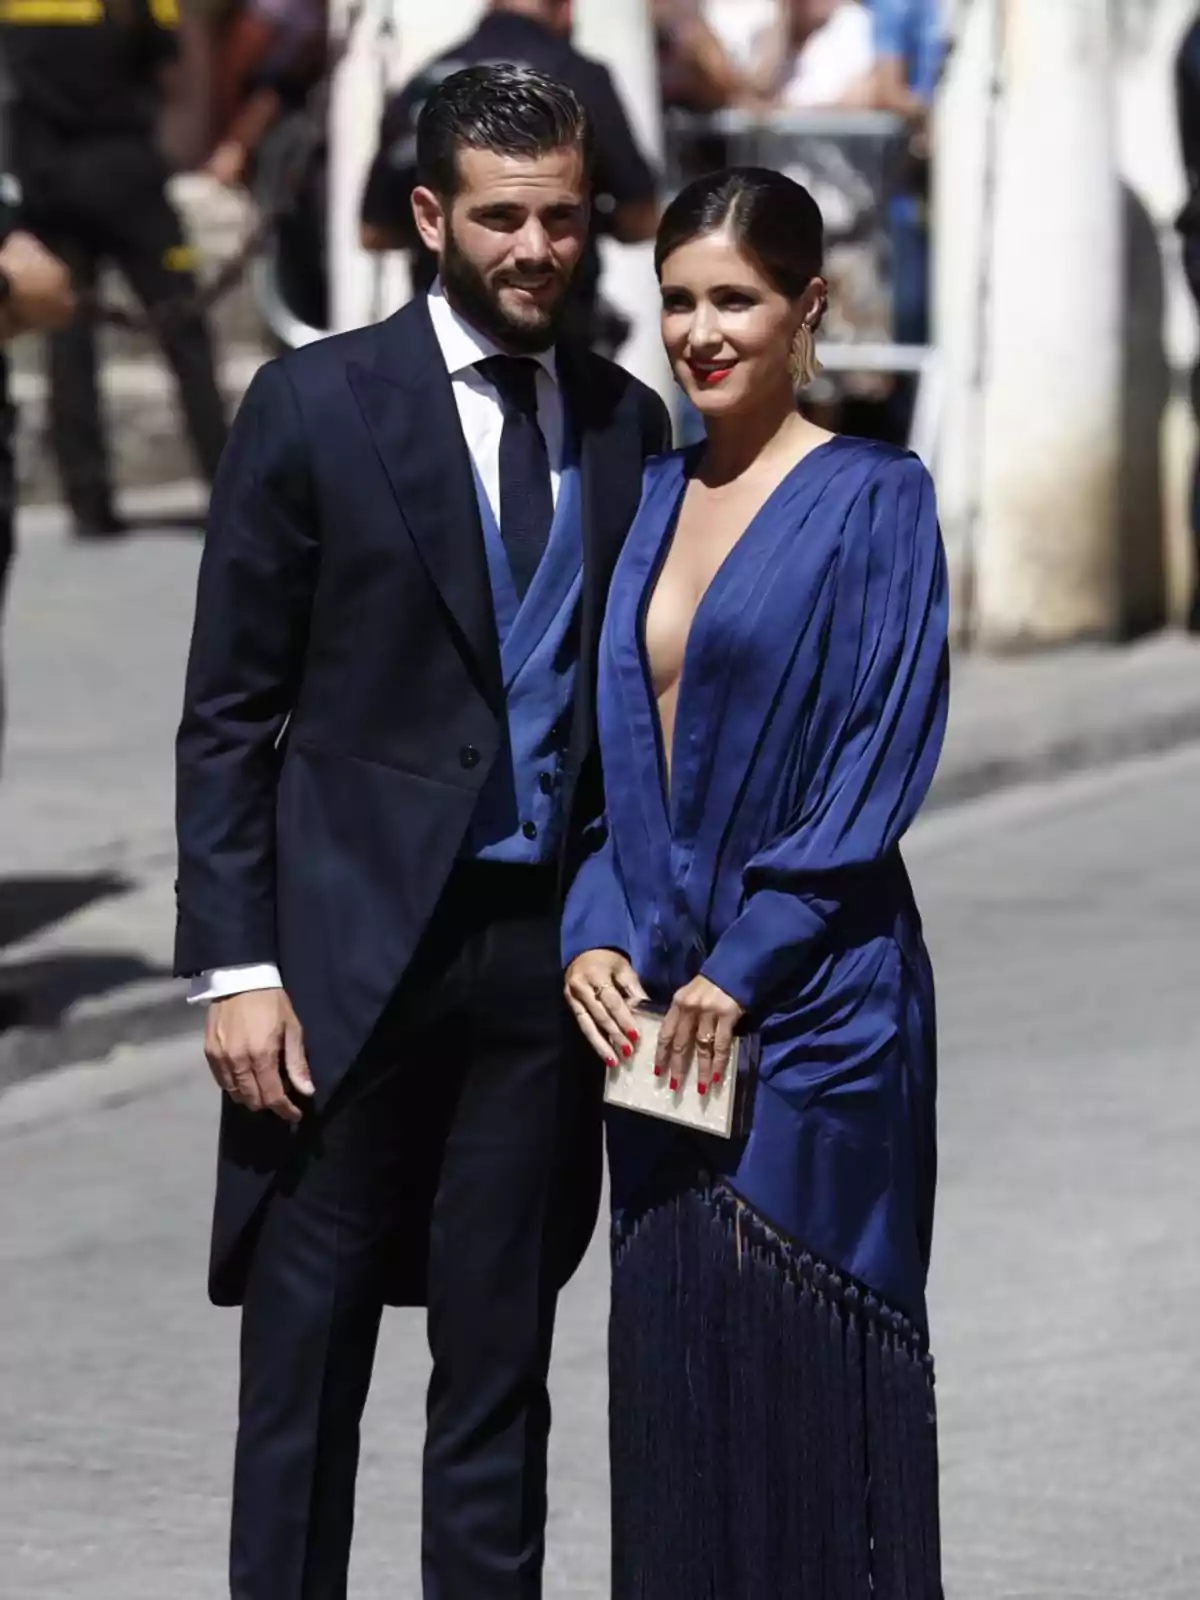 Una pareja elegantemente vestida, él con un traje oscuro y ella con un vestido azul profundo, posando juntos en un evento al aire libre.